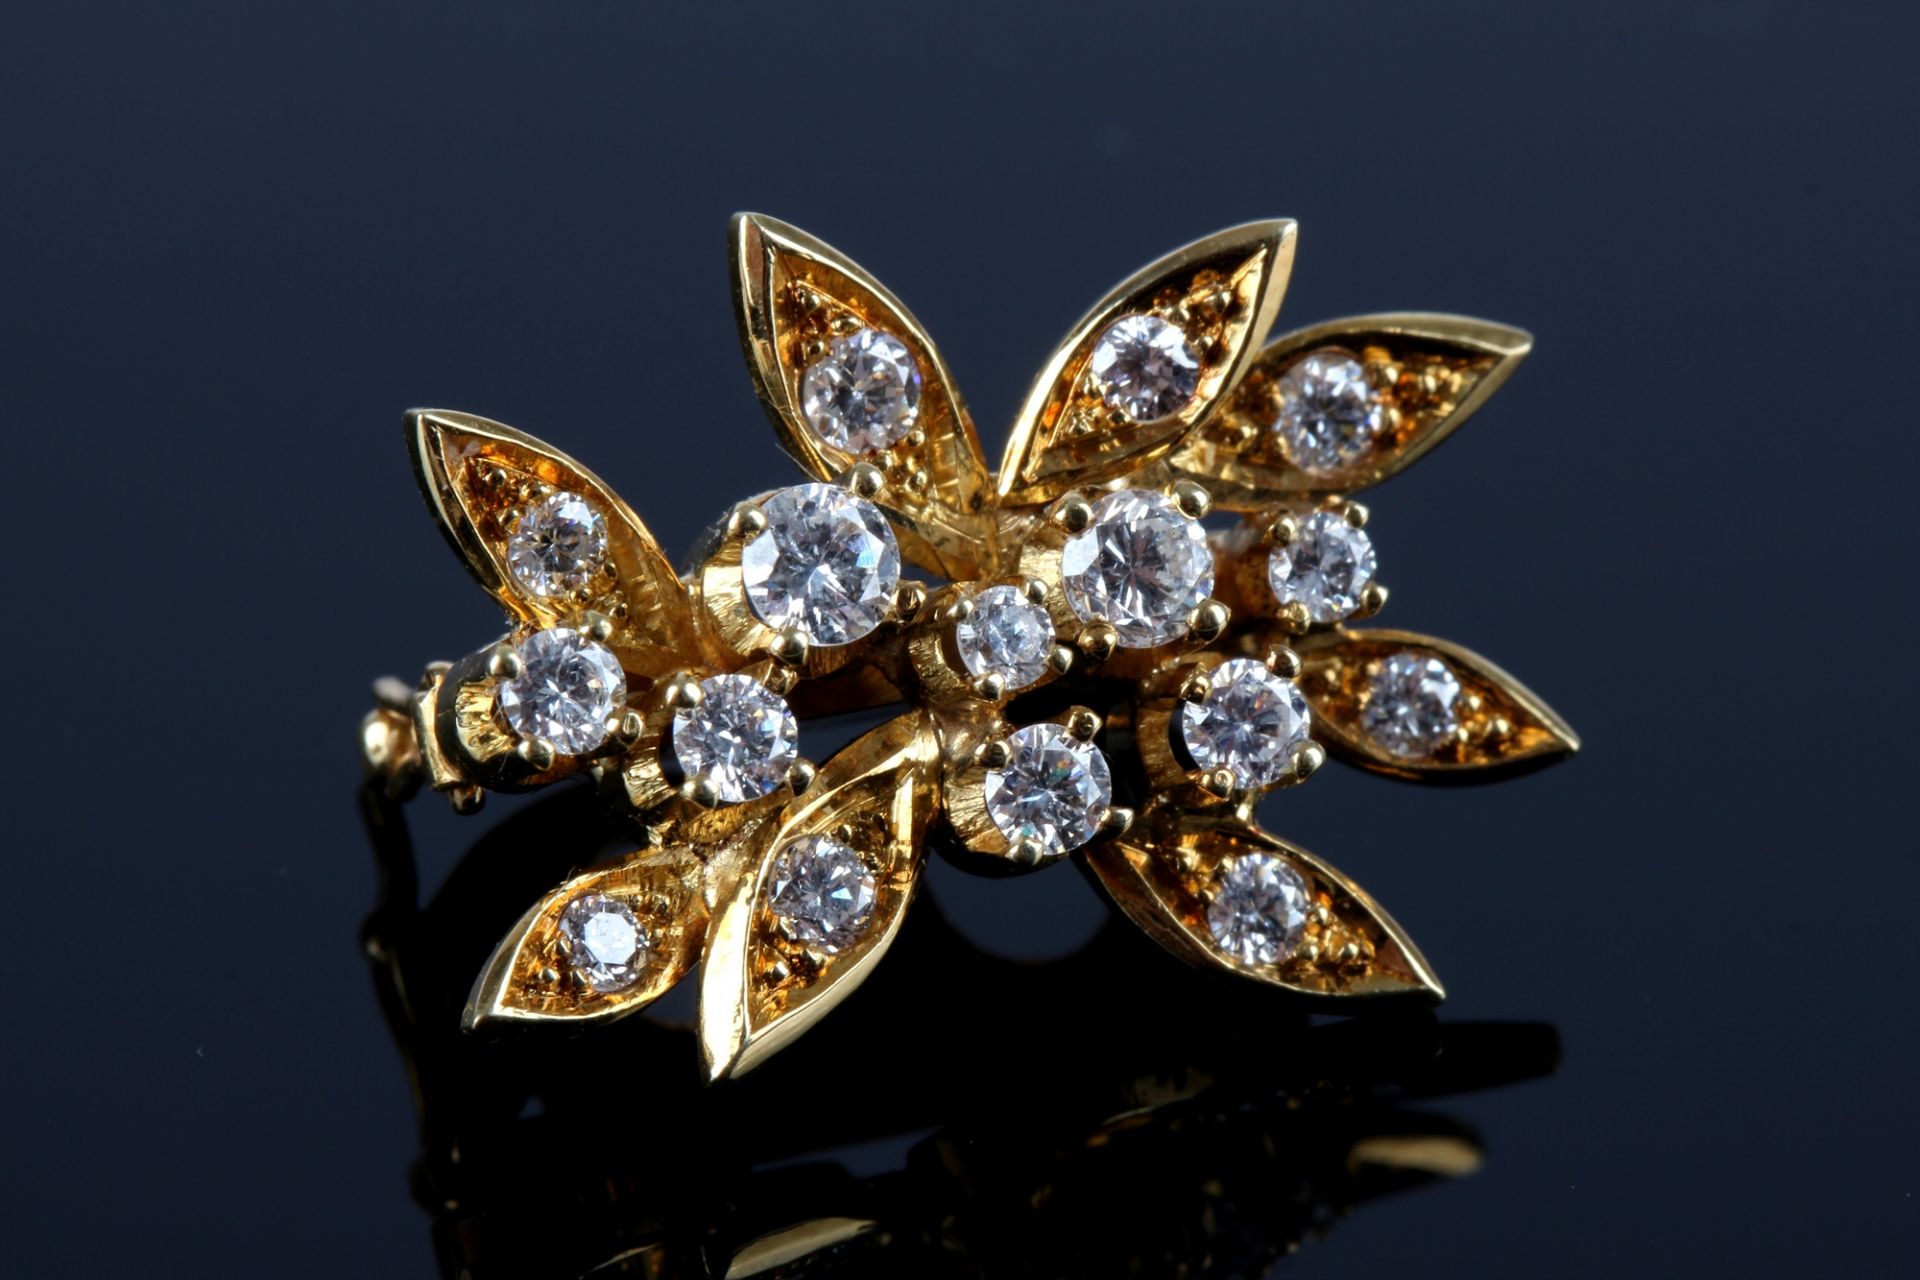 Perlenkette / Collier mit 750 Gold Verschluss mit Diamanten, pearl necklace with gold diamond lock, - Image 3 of 5